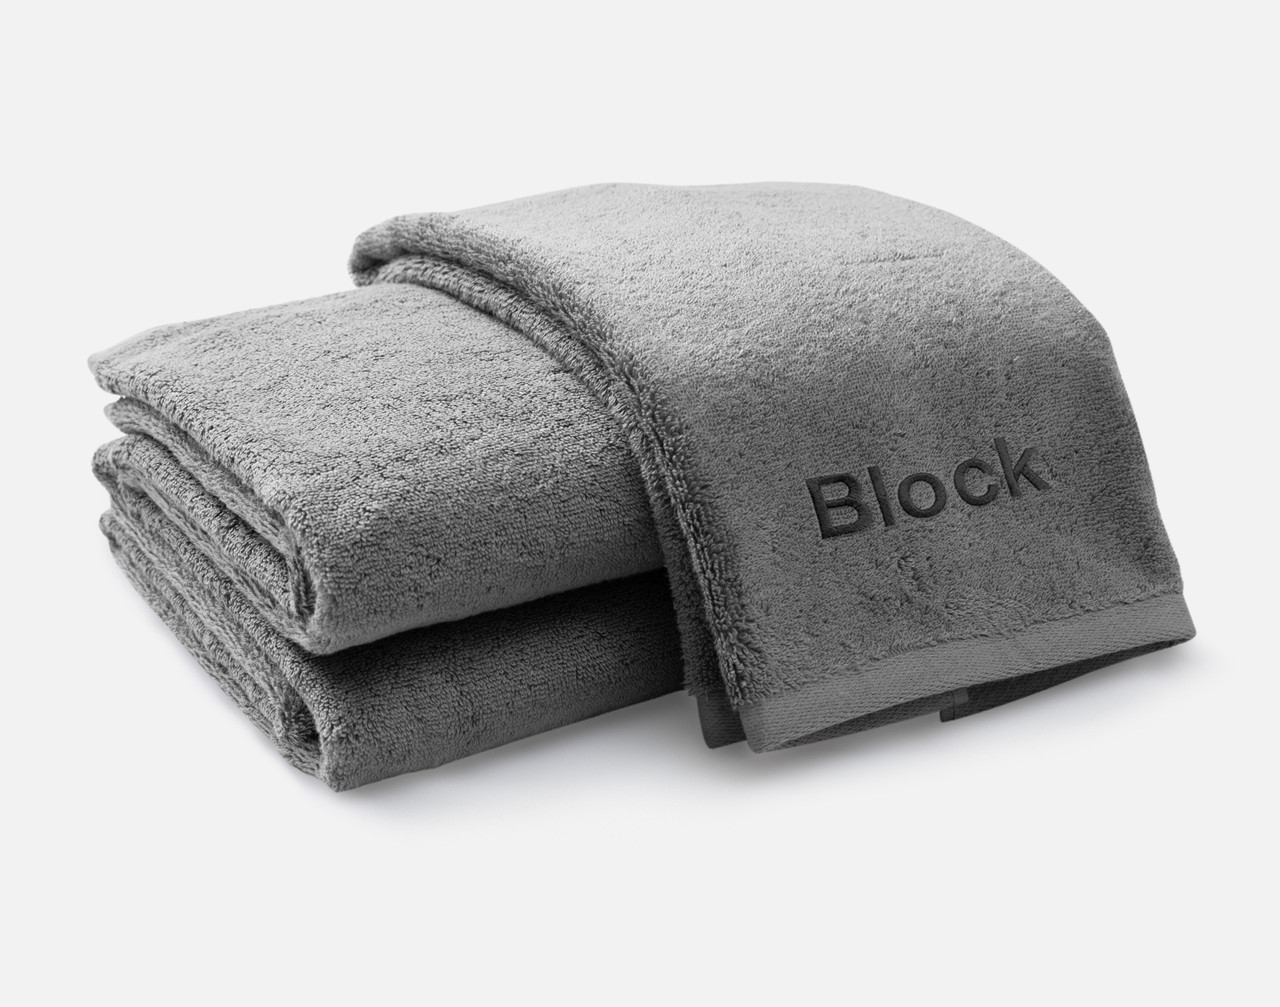 Vue pliée de notre serviette brodée personnalisée ensemble en gris, avec la police Block brodée en blanc noir le long du bord inférieur.